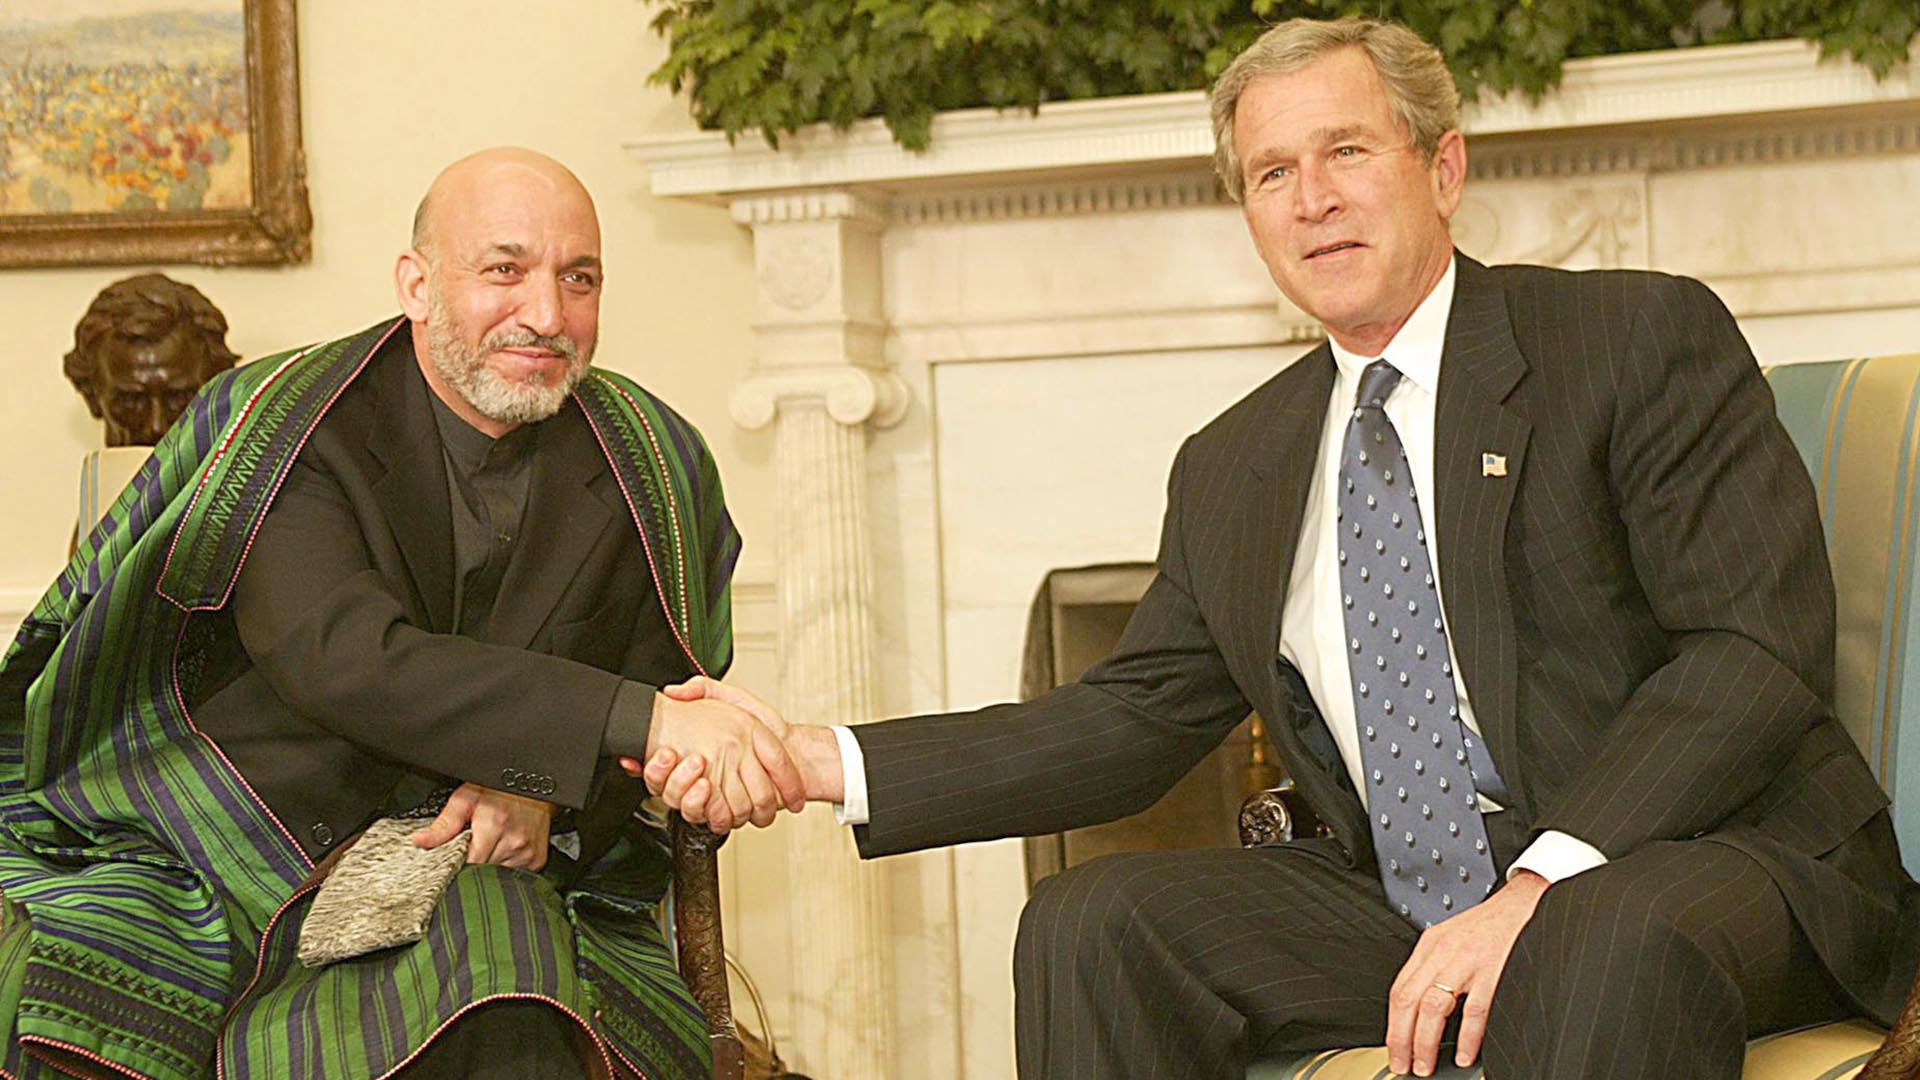 El presidente de Estados Unidos, George W. Bush (R), le da la mano al presidente de Afganistán, Hamid Karzai, en la Oficina Oval de la Casa Blanca en Washington, DC, el 27 de febrero de 2003. (AFP/ Luke FRAZZA)